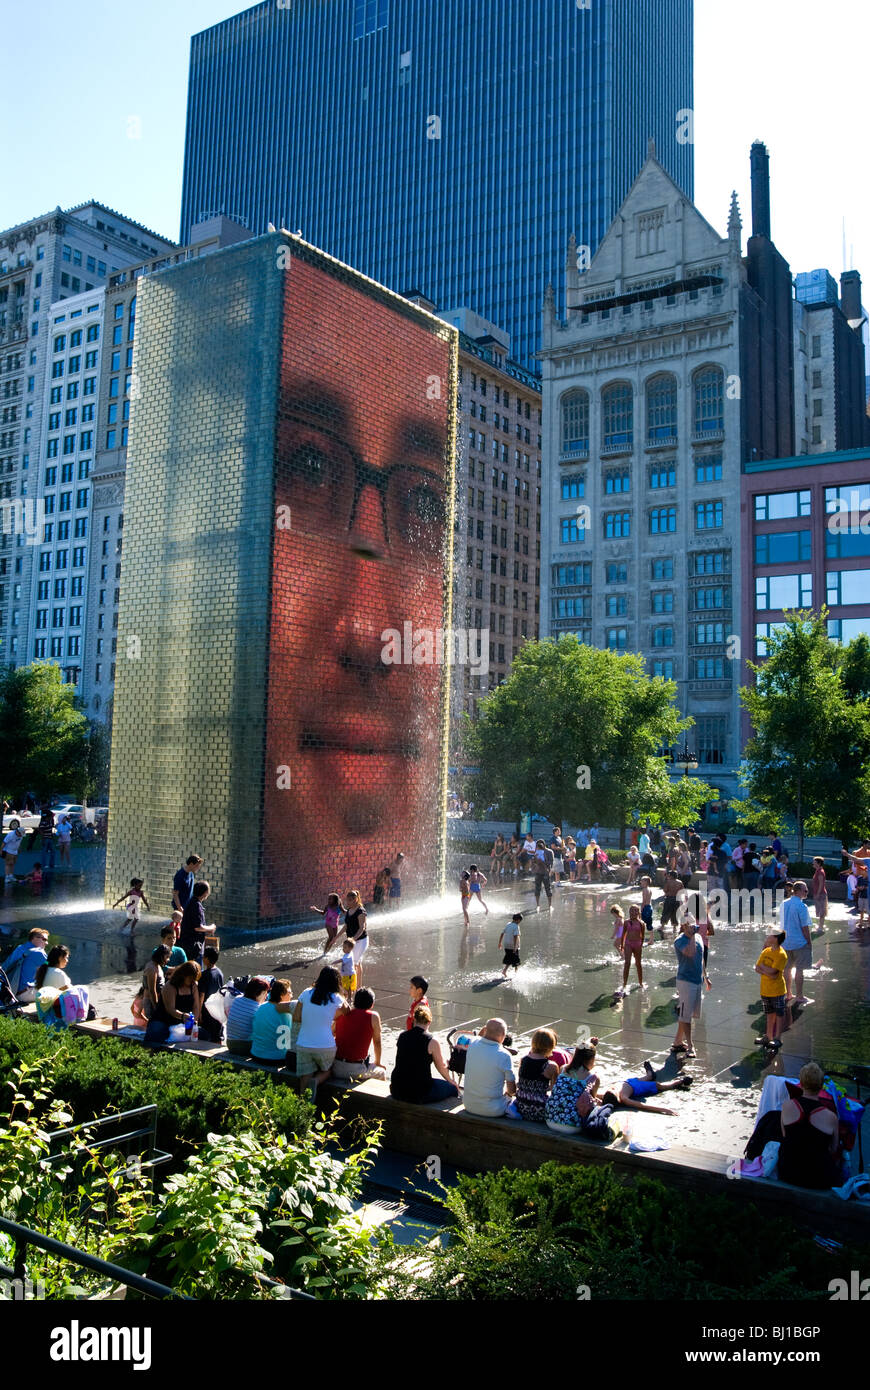 Crown Fountain, Chicago, Illinois. interaktive Brunnen, gestaltet von Künstler Jaume Plensa. Flächen mit Leuchtdioden. Stockfoto